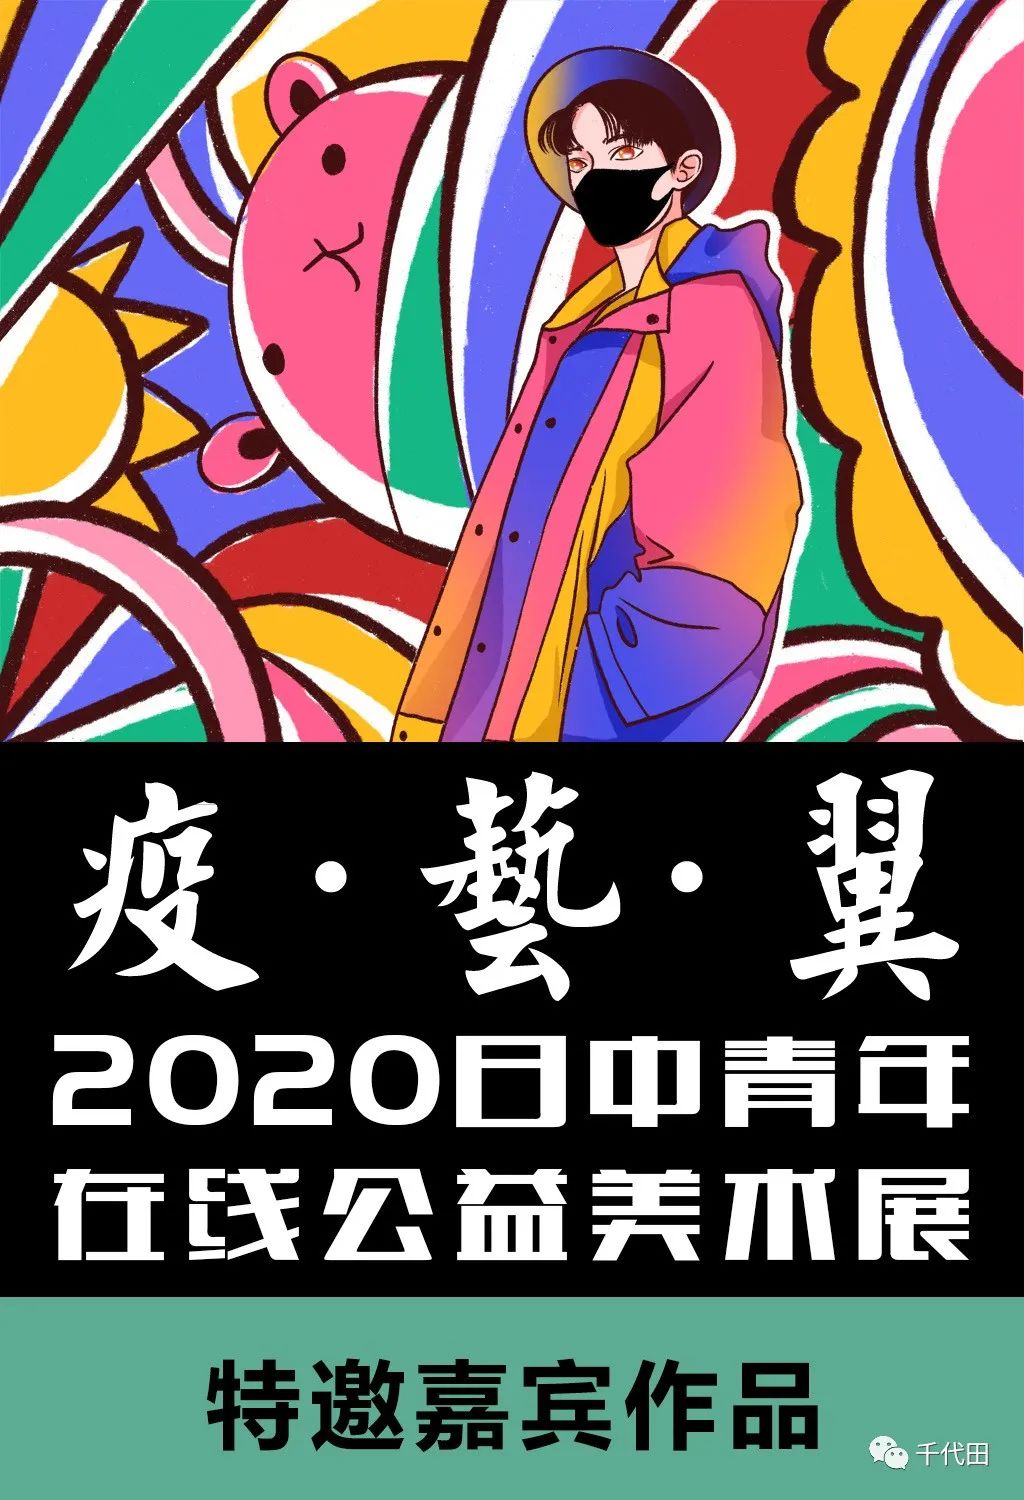 千代田新闻｜倒计时最后四天！疫·艺·翼 2020日中青年在线公益美术展·特邀嘉宾作品